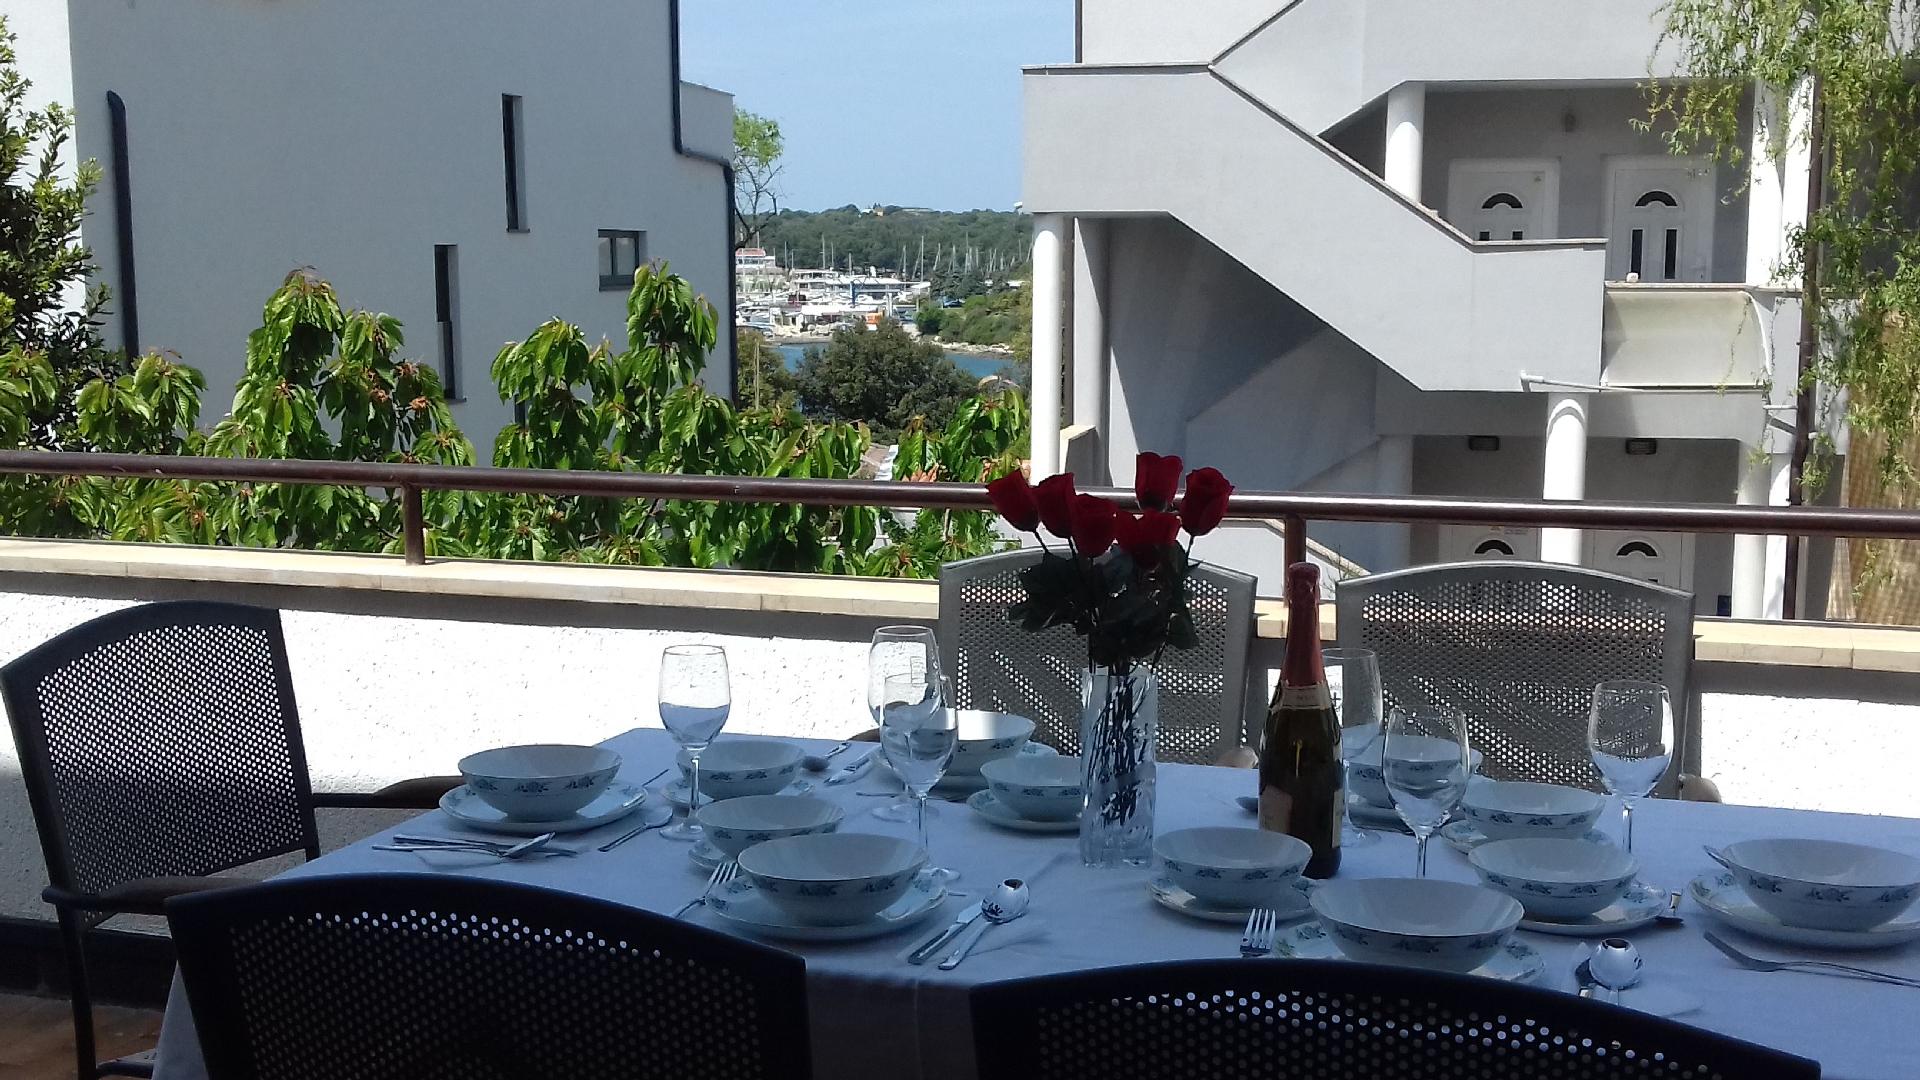 Ferienwohnung für 6 Personen ca. 130 m²  Ferienhaus in Istrien